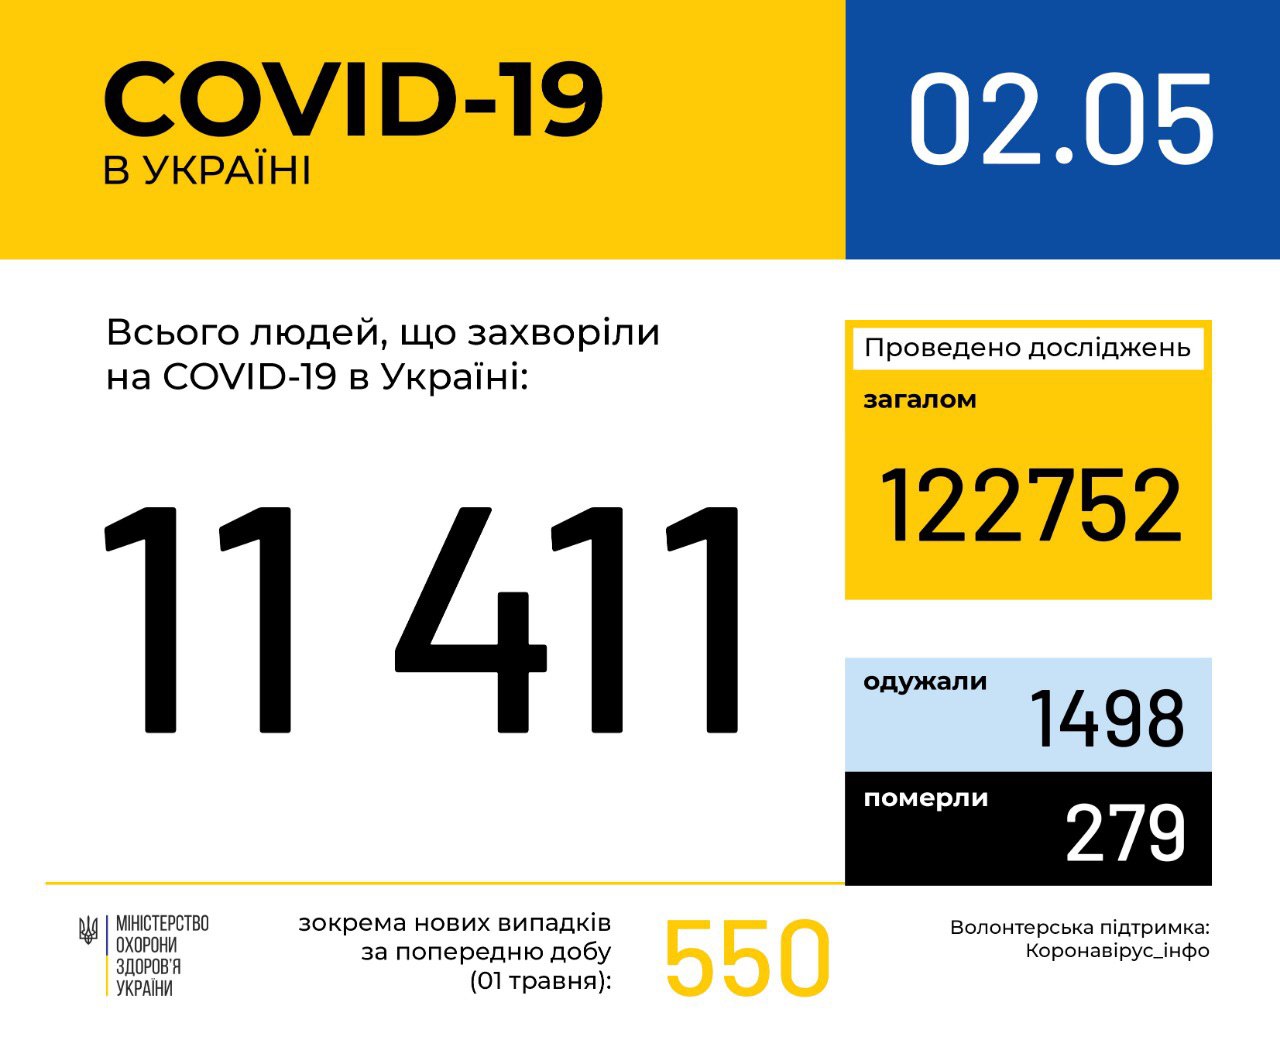 В Україні зафіксовано 11411 випадків коронавірусної хвороби COVID-19, - МОЗ